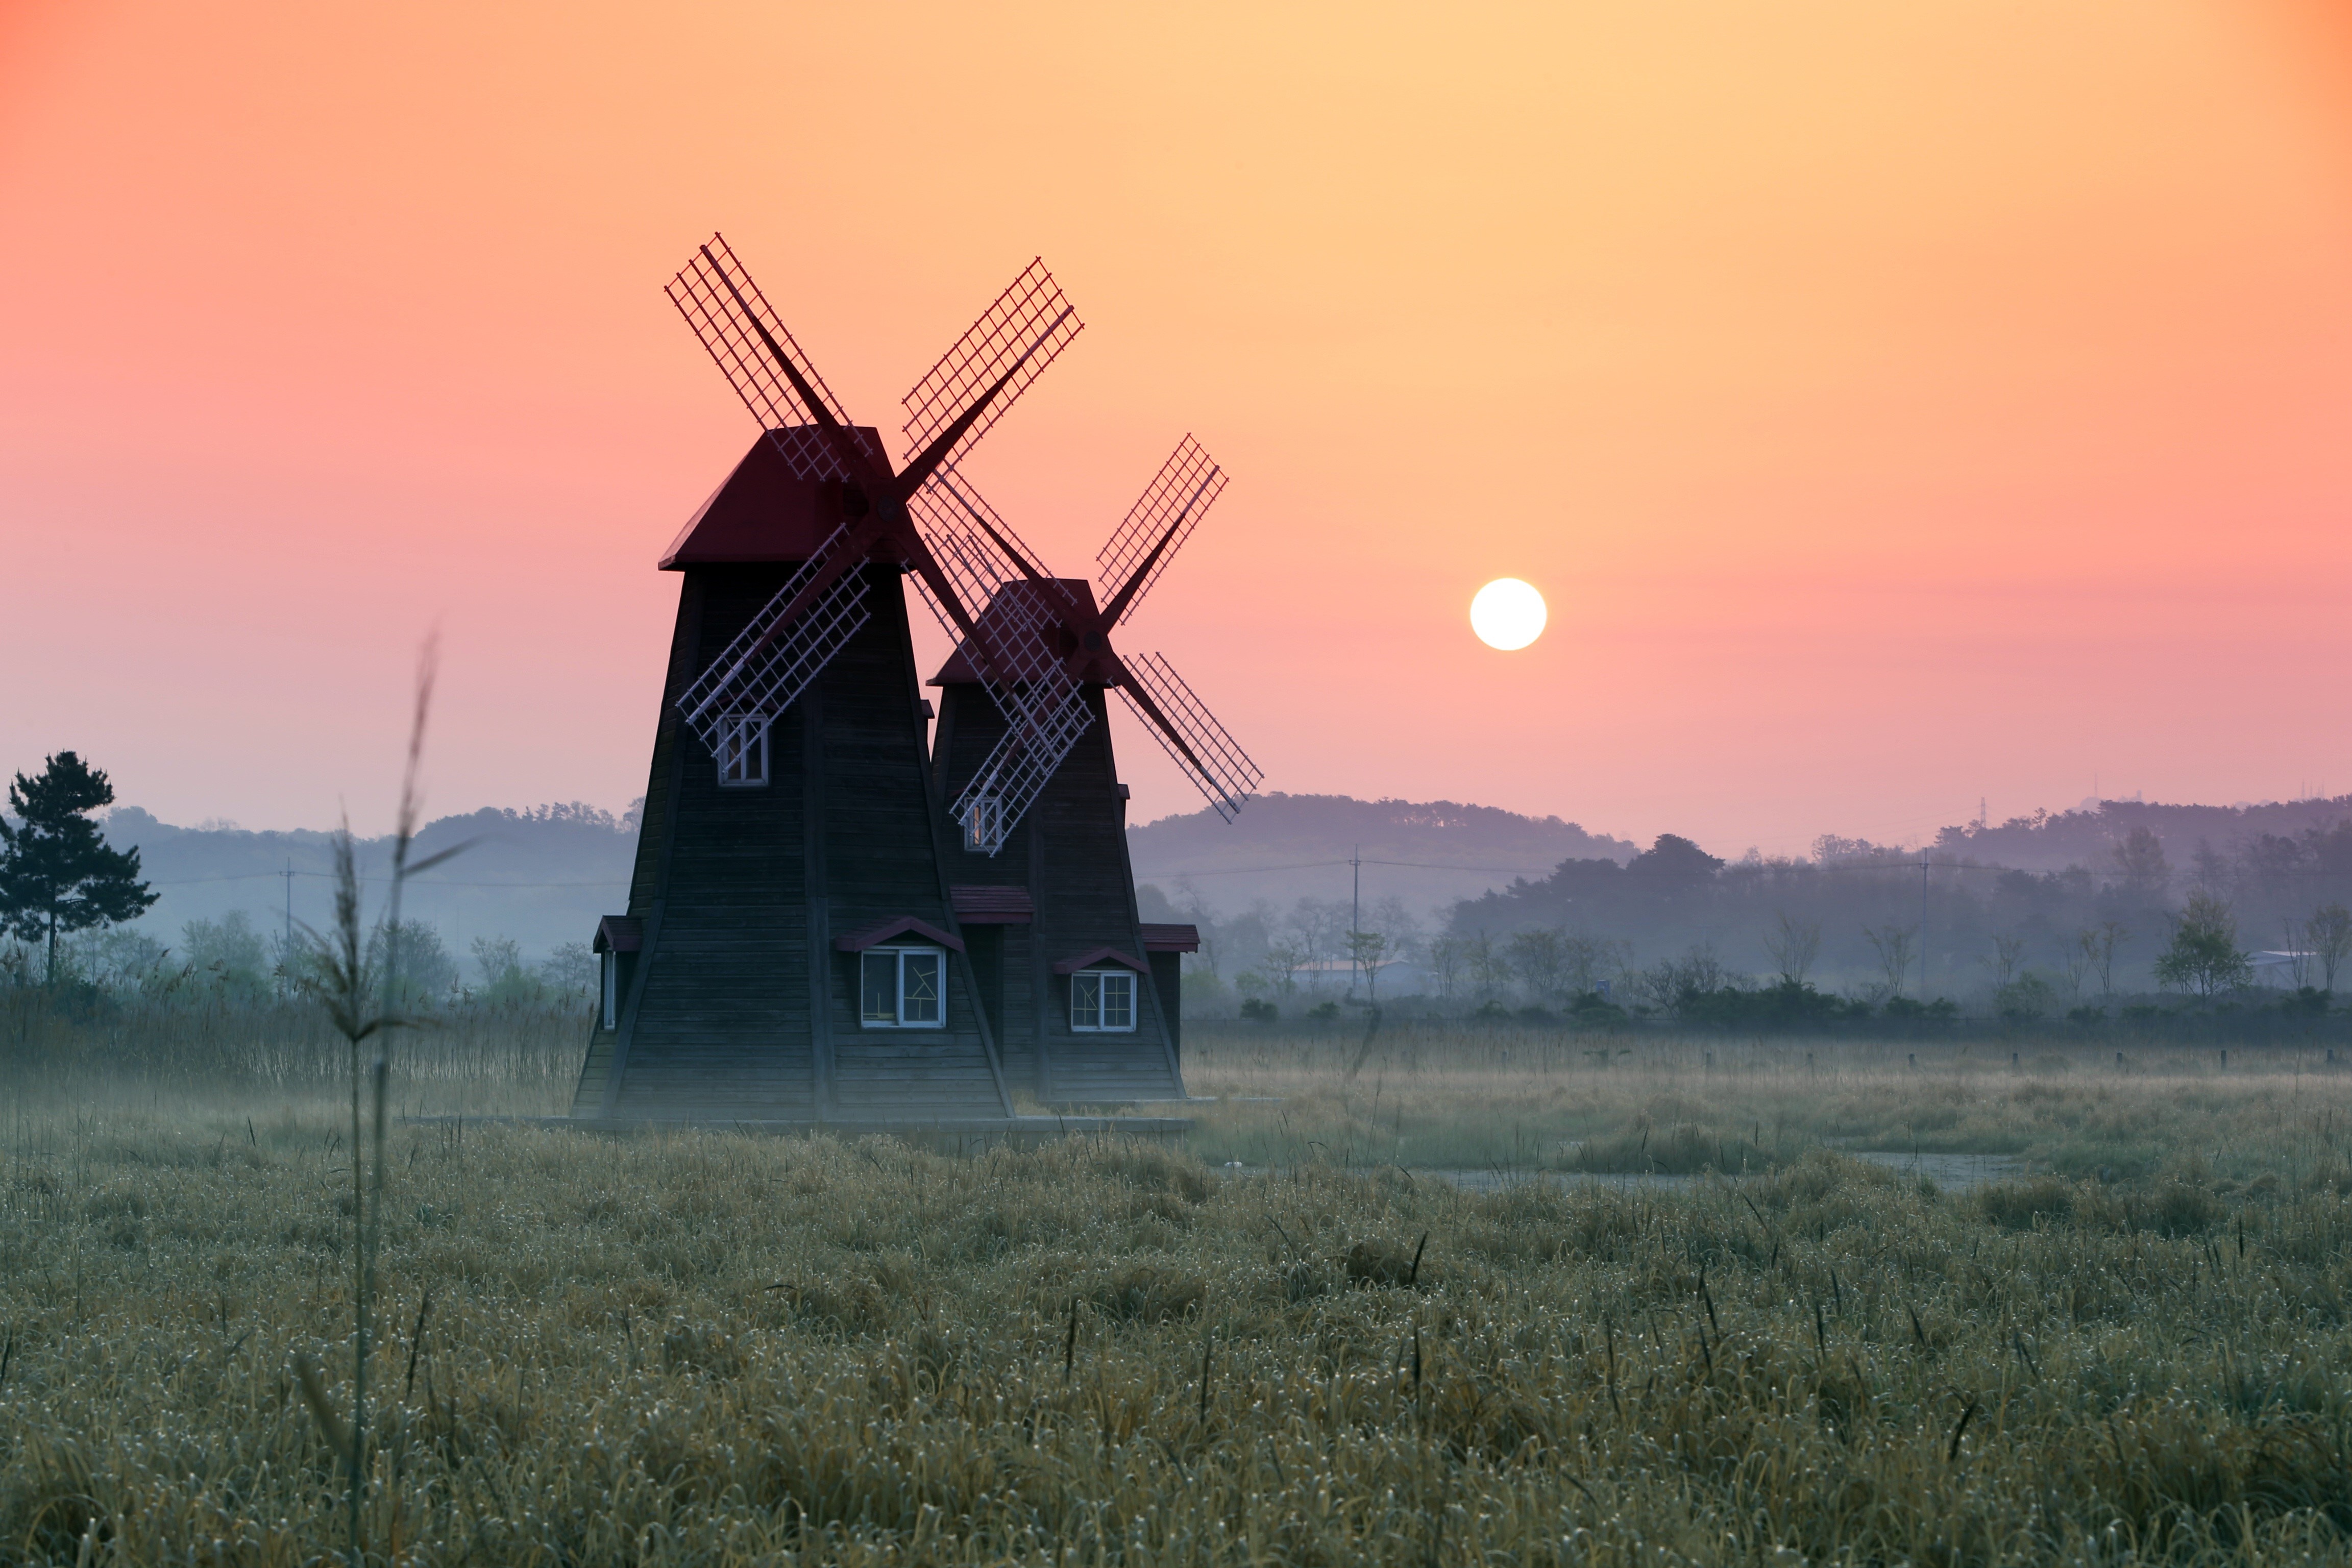 Sunrise on a Windmill by byunghun cho